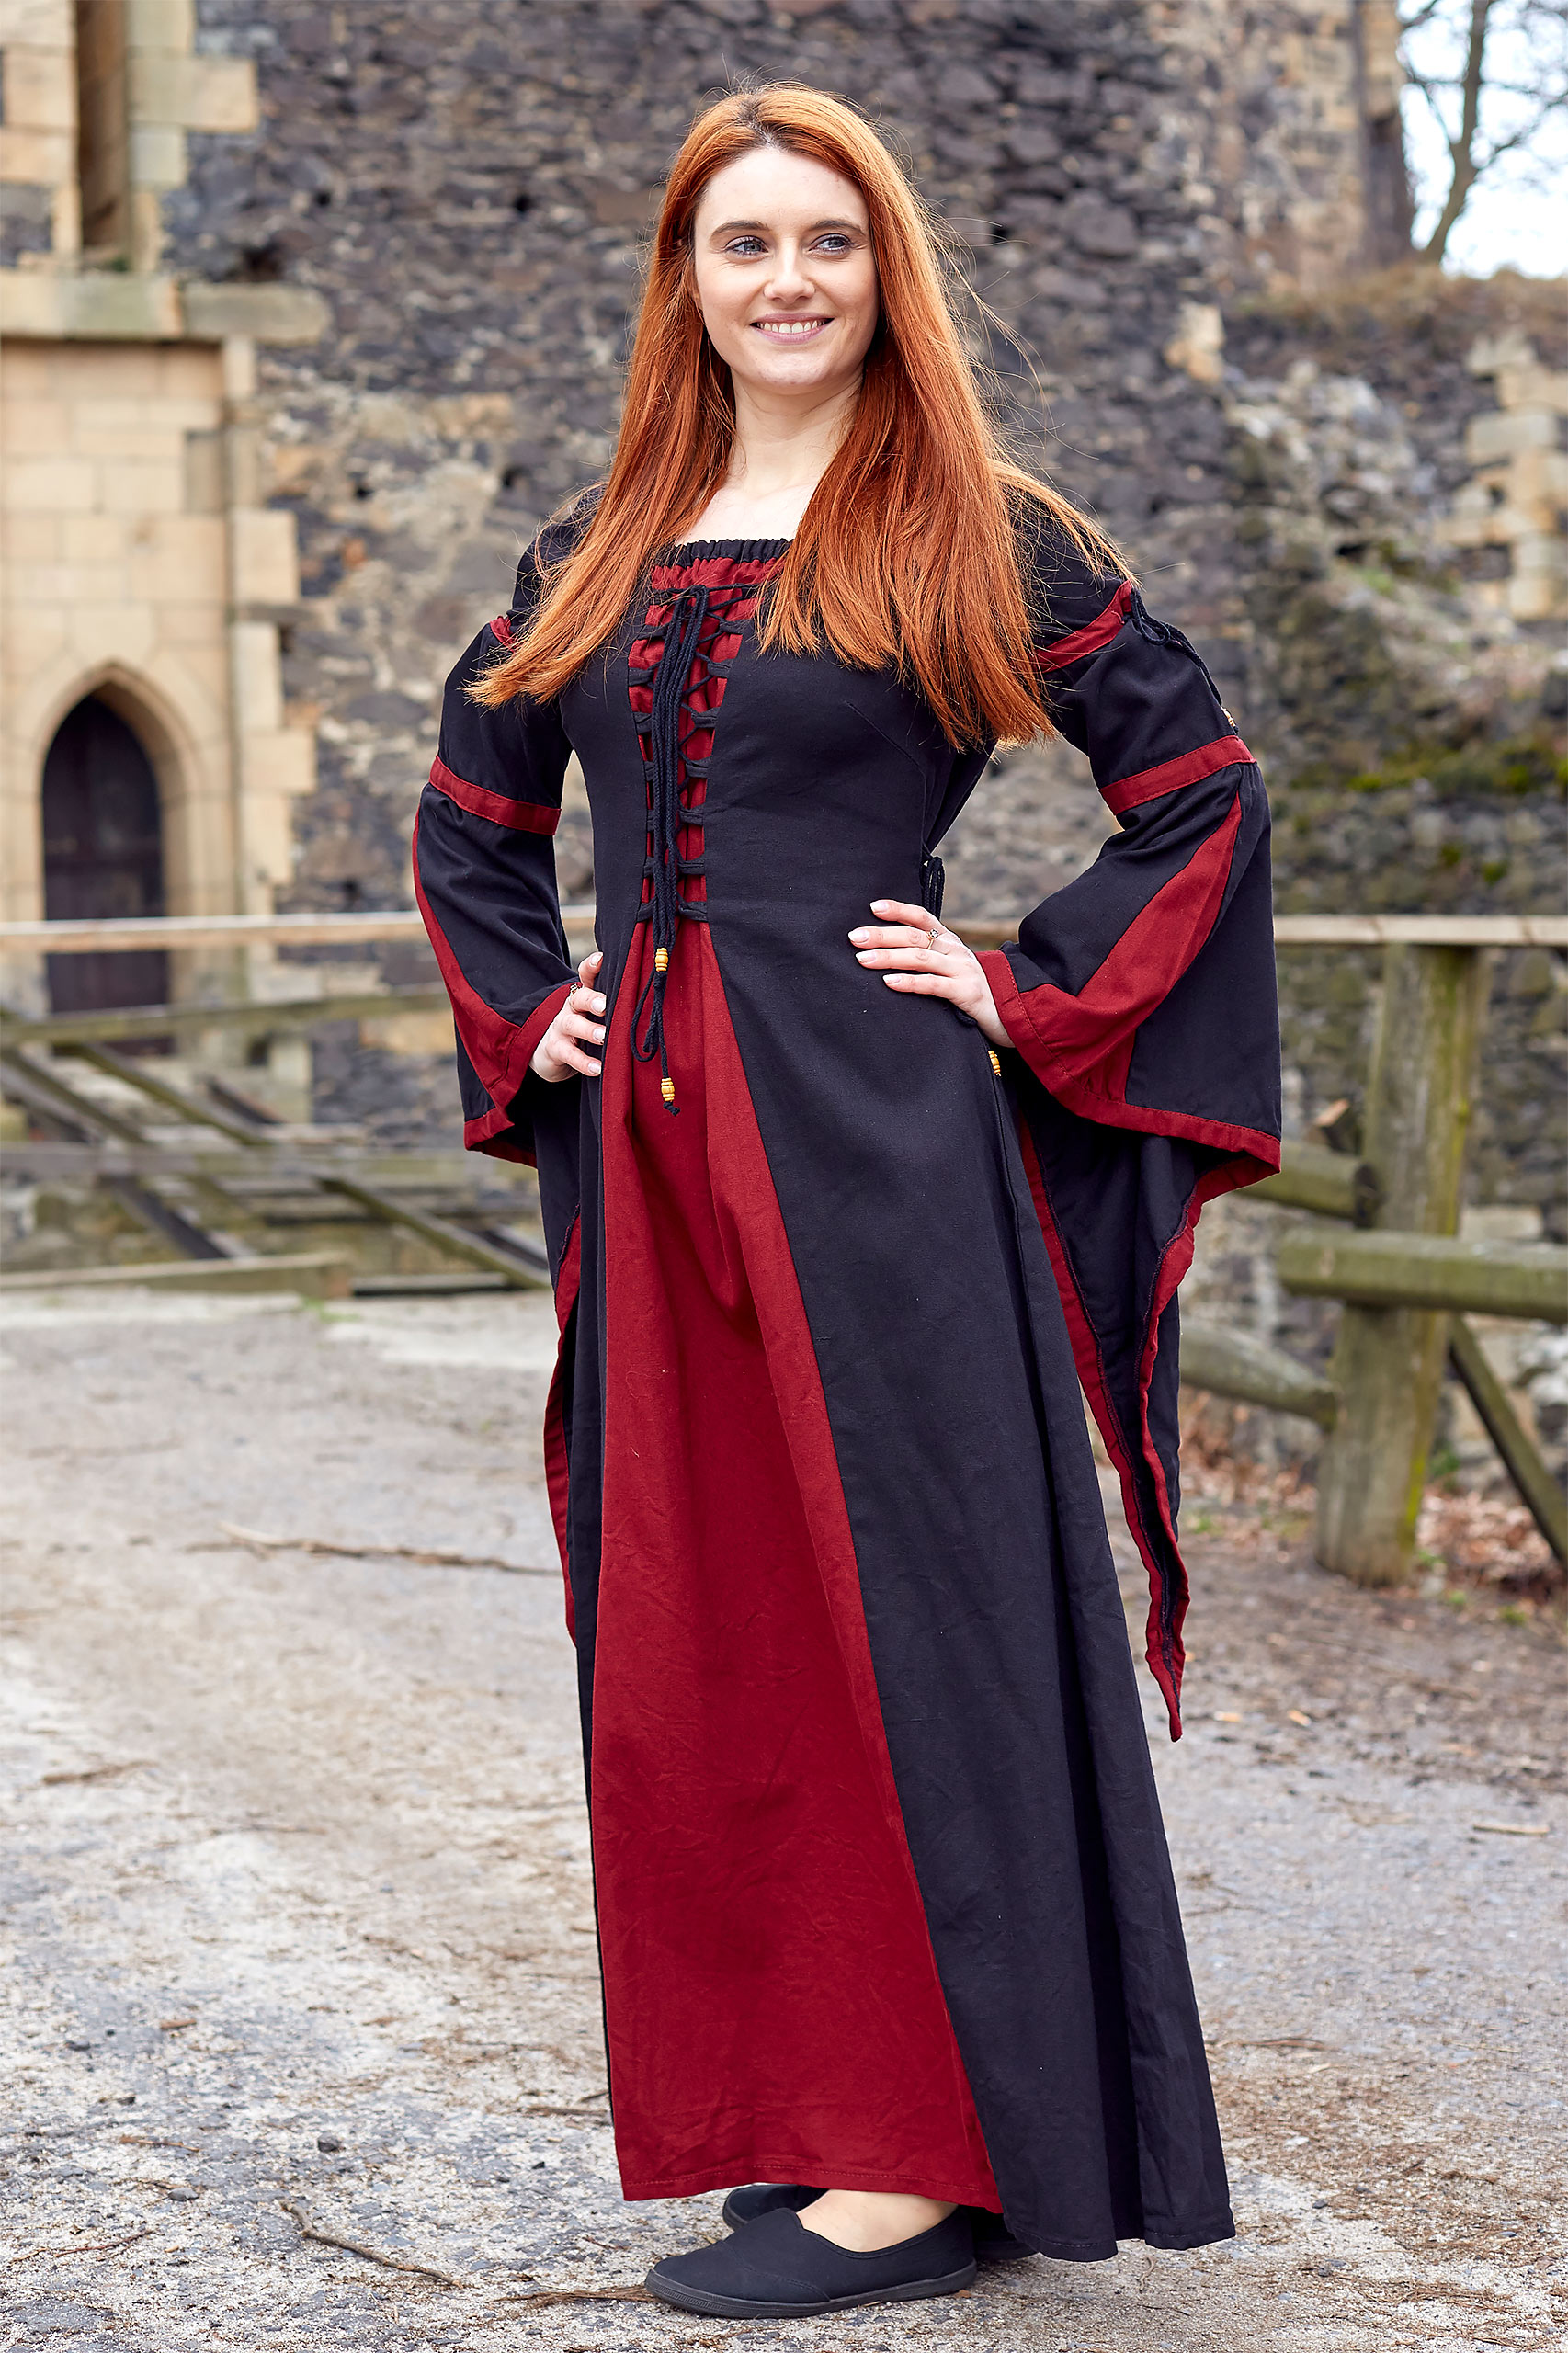 Elisa - Robe Médiévale Rouge-Noir